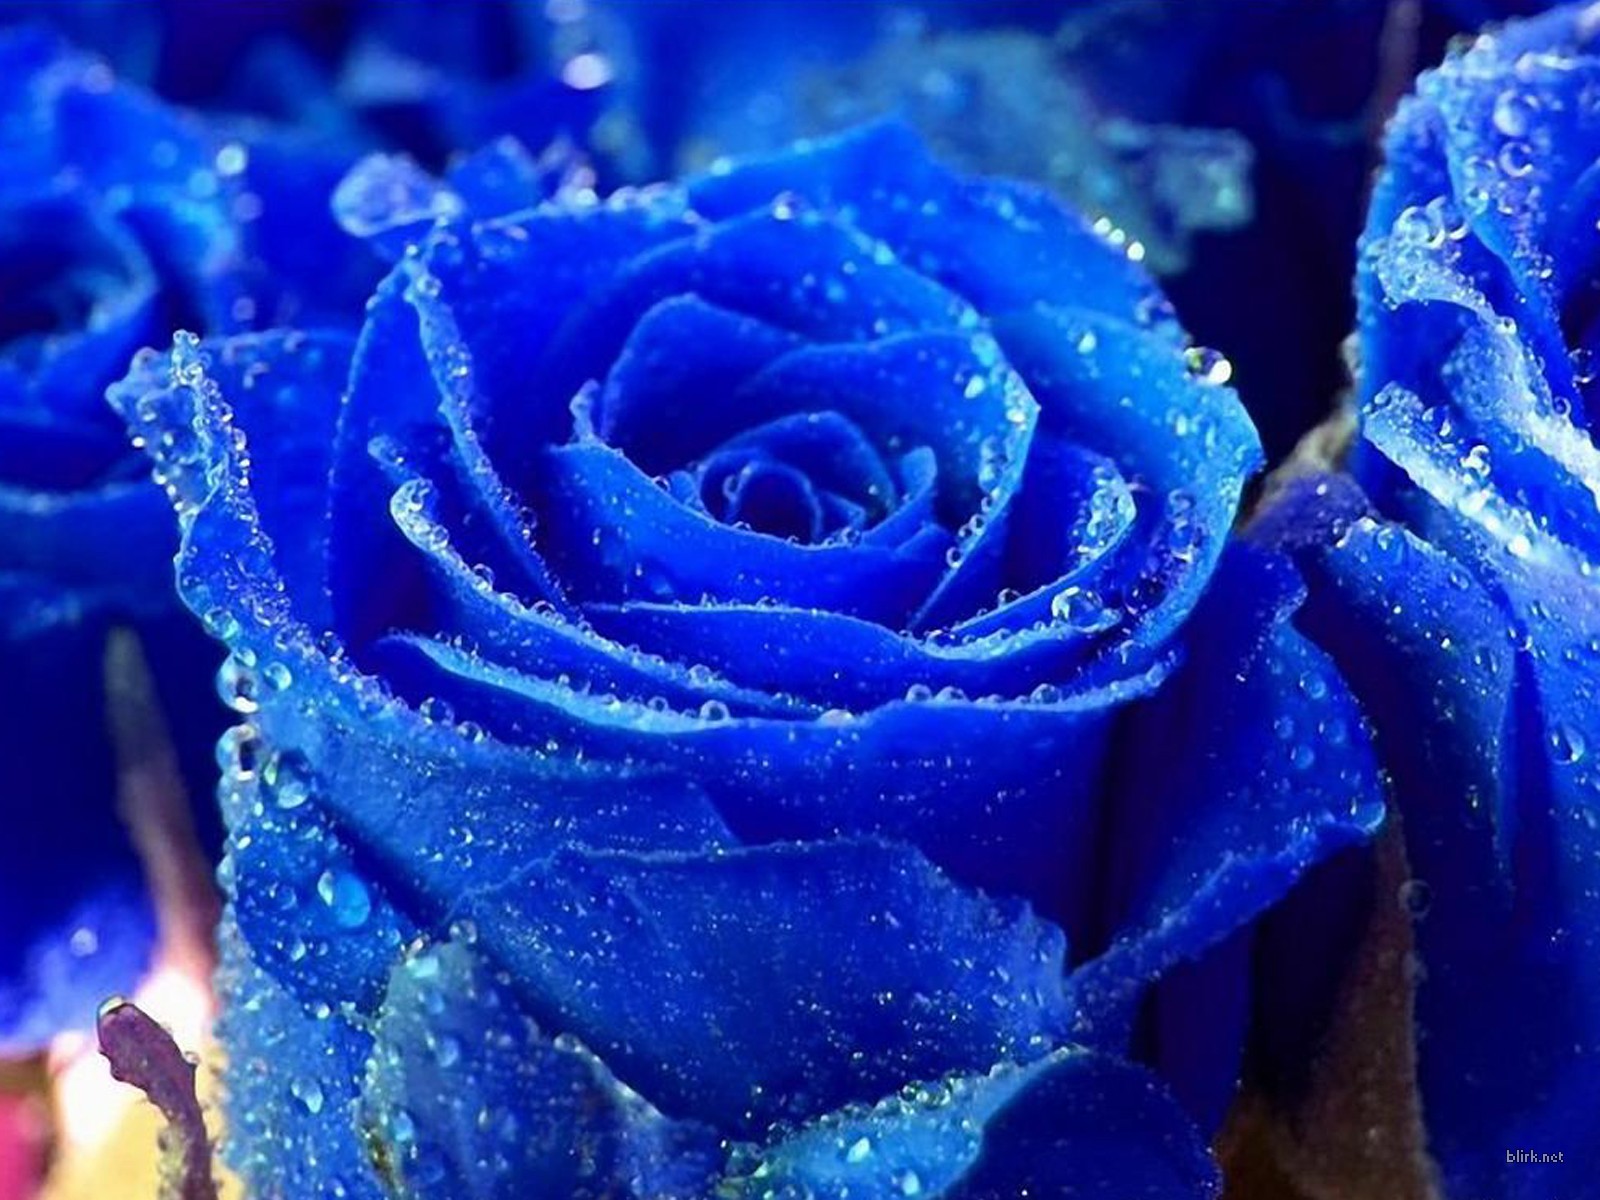 Hình nền Blue Rose Flower sẽ khiến không gian máy tính của bạn trở nên lãng mạn và yên bình hơn. Với sắc xanh tuyệt đẹp và hình ảnh hoa hồng đầy hoa lá, bạn sẽ cảm thấy như đang đứng giữa một vườn hoa thơm ngát. Nhấp chuột để tải xuống ngay bức ảnh tuyệt đẹp này.